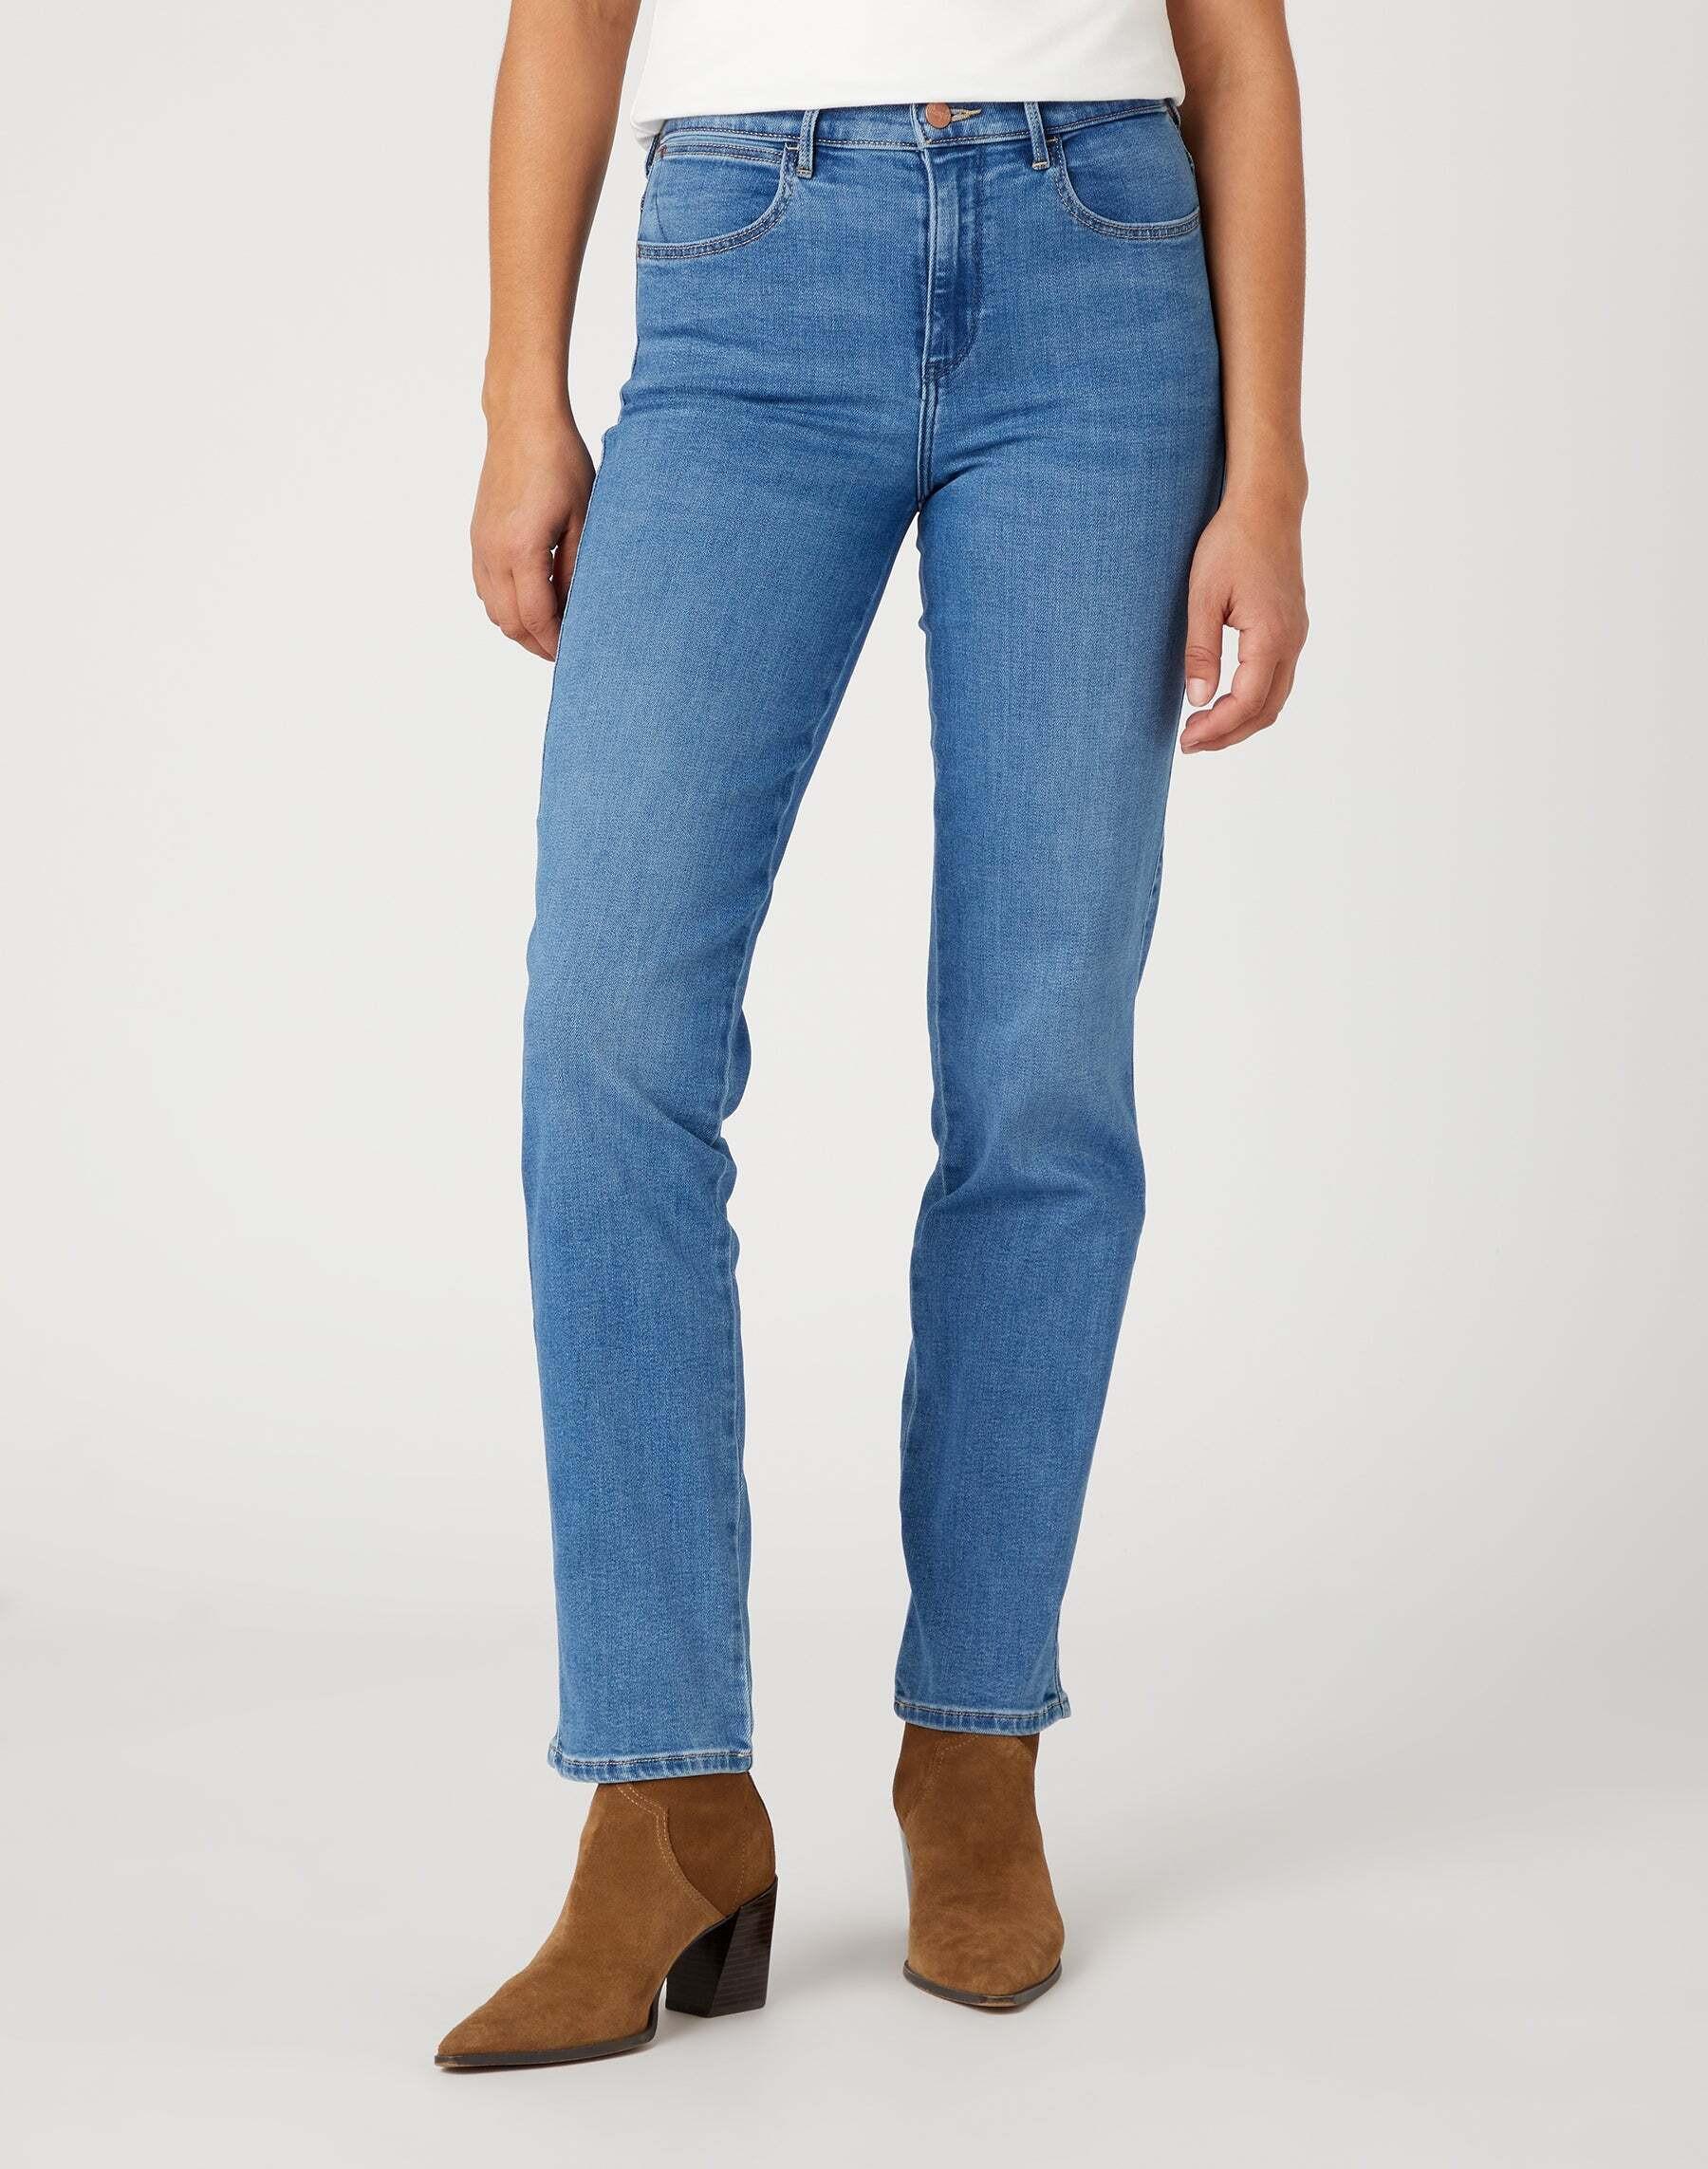 Jeans Straight Damen Hellblau L34/W30 von Wrangler